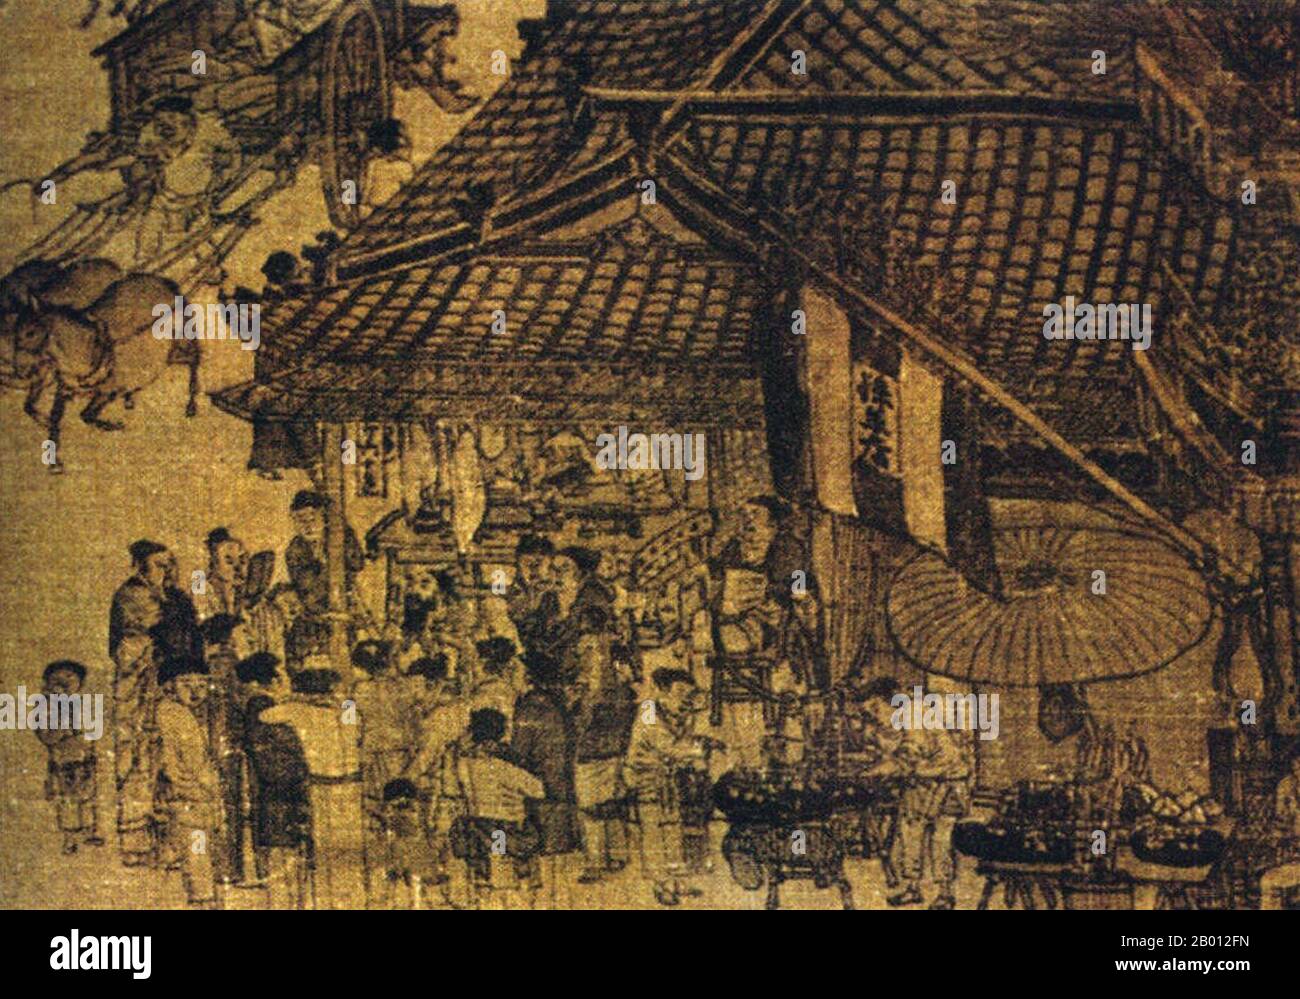 Cina: 'Lungo il fiume durante il festival di Qingming'. Particolare di un dipinto di seta di Zhang Zeduan (1085-1145), XII secolo. Zhang Zeduan (1085-1145), nome di cortesia Zheng Dao, è stato un pittore della dinastia Song, che vive durante il periodo di transizione dalla canzone del Nord alla canzone del Sud. Fu una figura significativa nella storia iniziale dell'arte cinese, strumentale nello sviluppo dello stile paesaggistico conosciuto come shan Shui. I suoi dipinti hanno contribuito a rivelare molto sulla vita in Cina nei secoli 11 ° e 12 °. Foto Stock